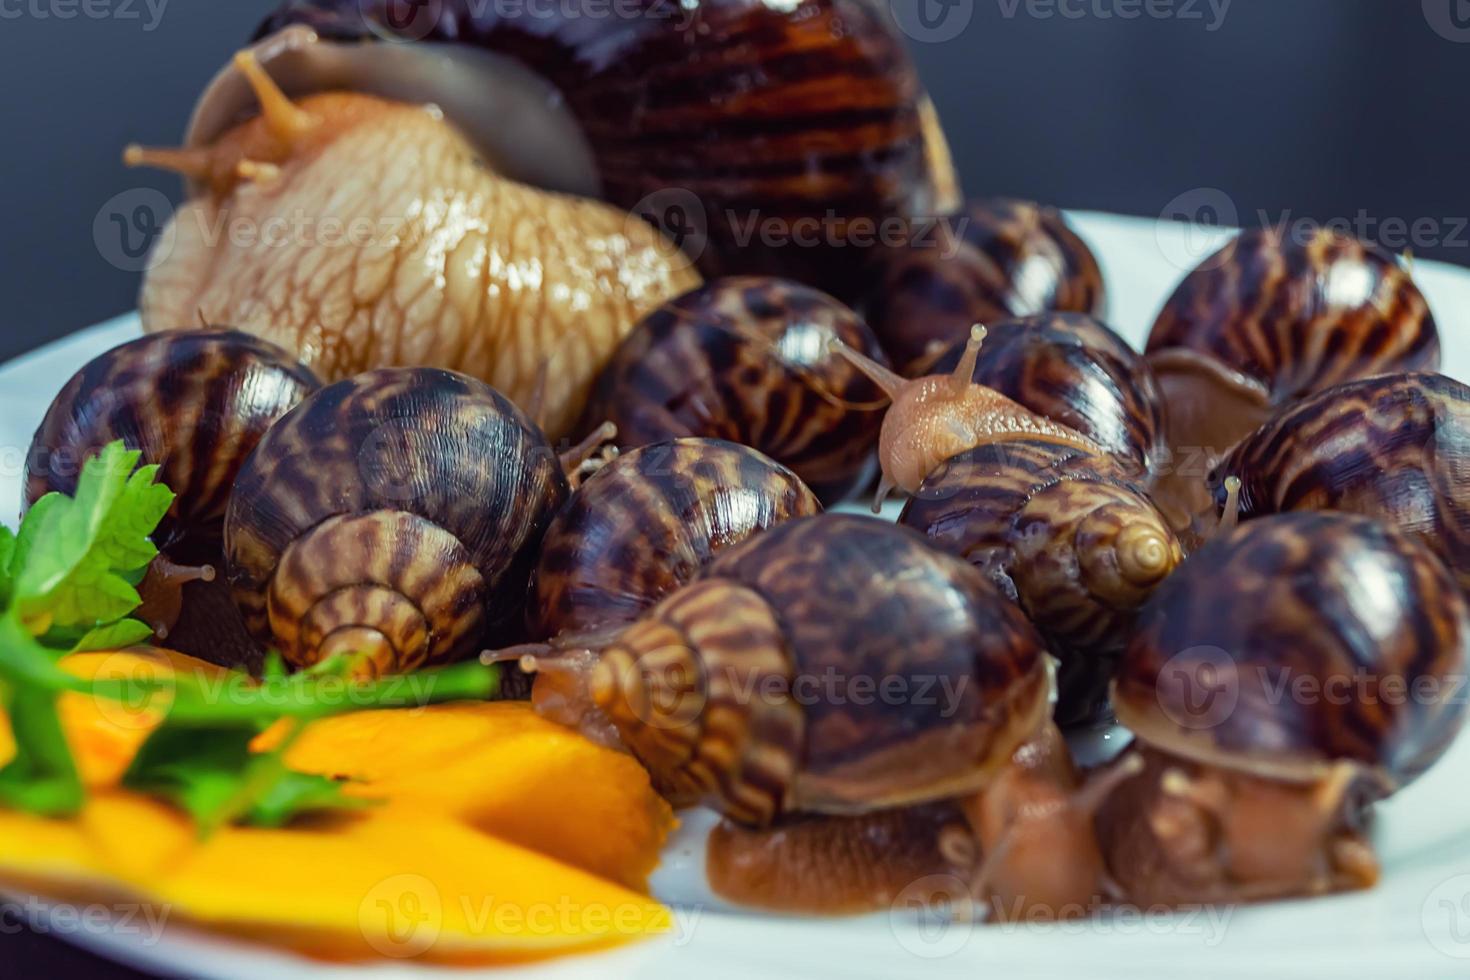 druivenslakken, akhatina, op een bord, als ruw voedsel, een rawism foto